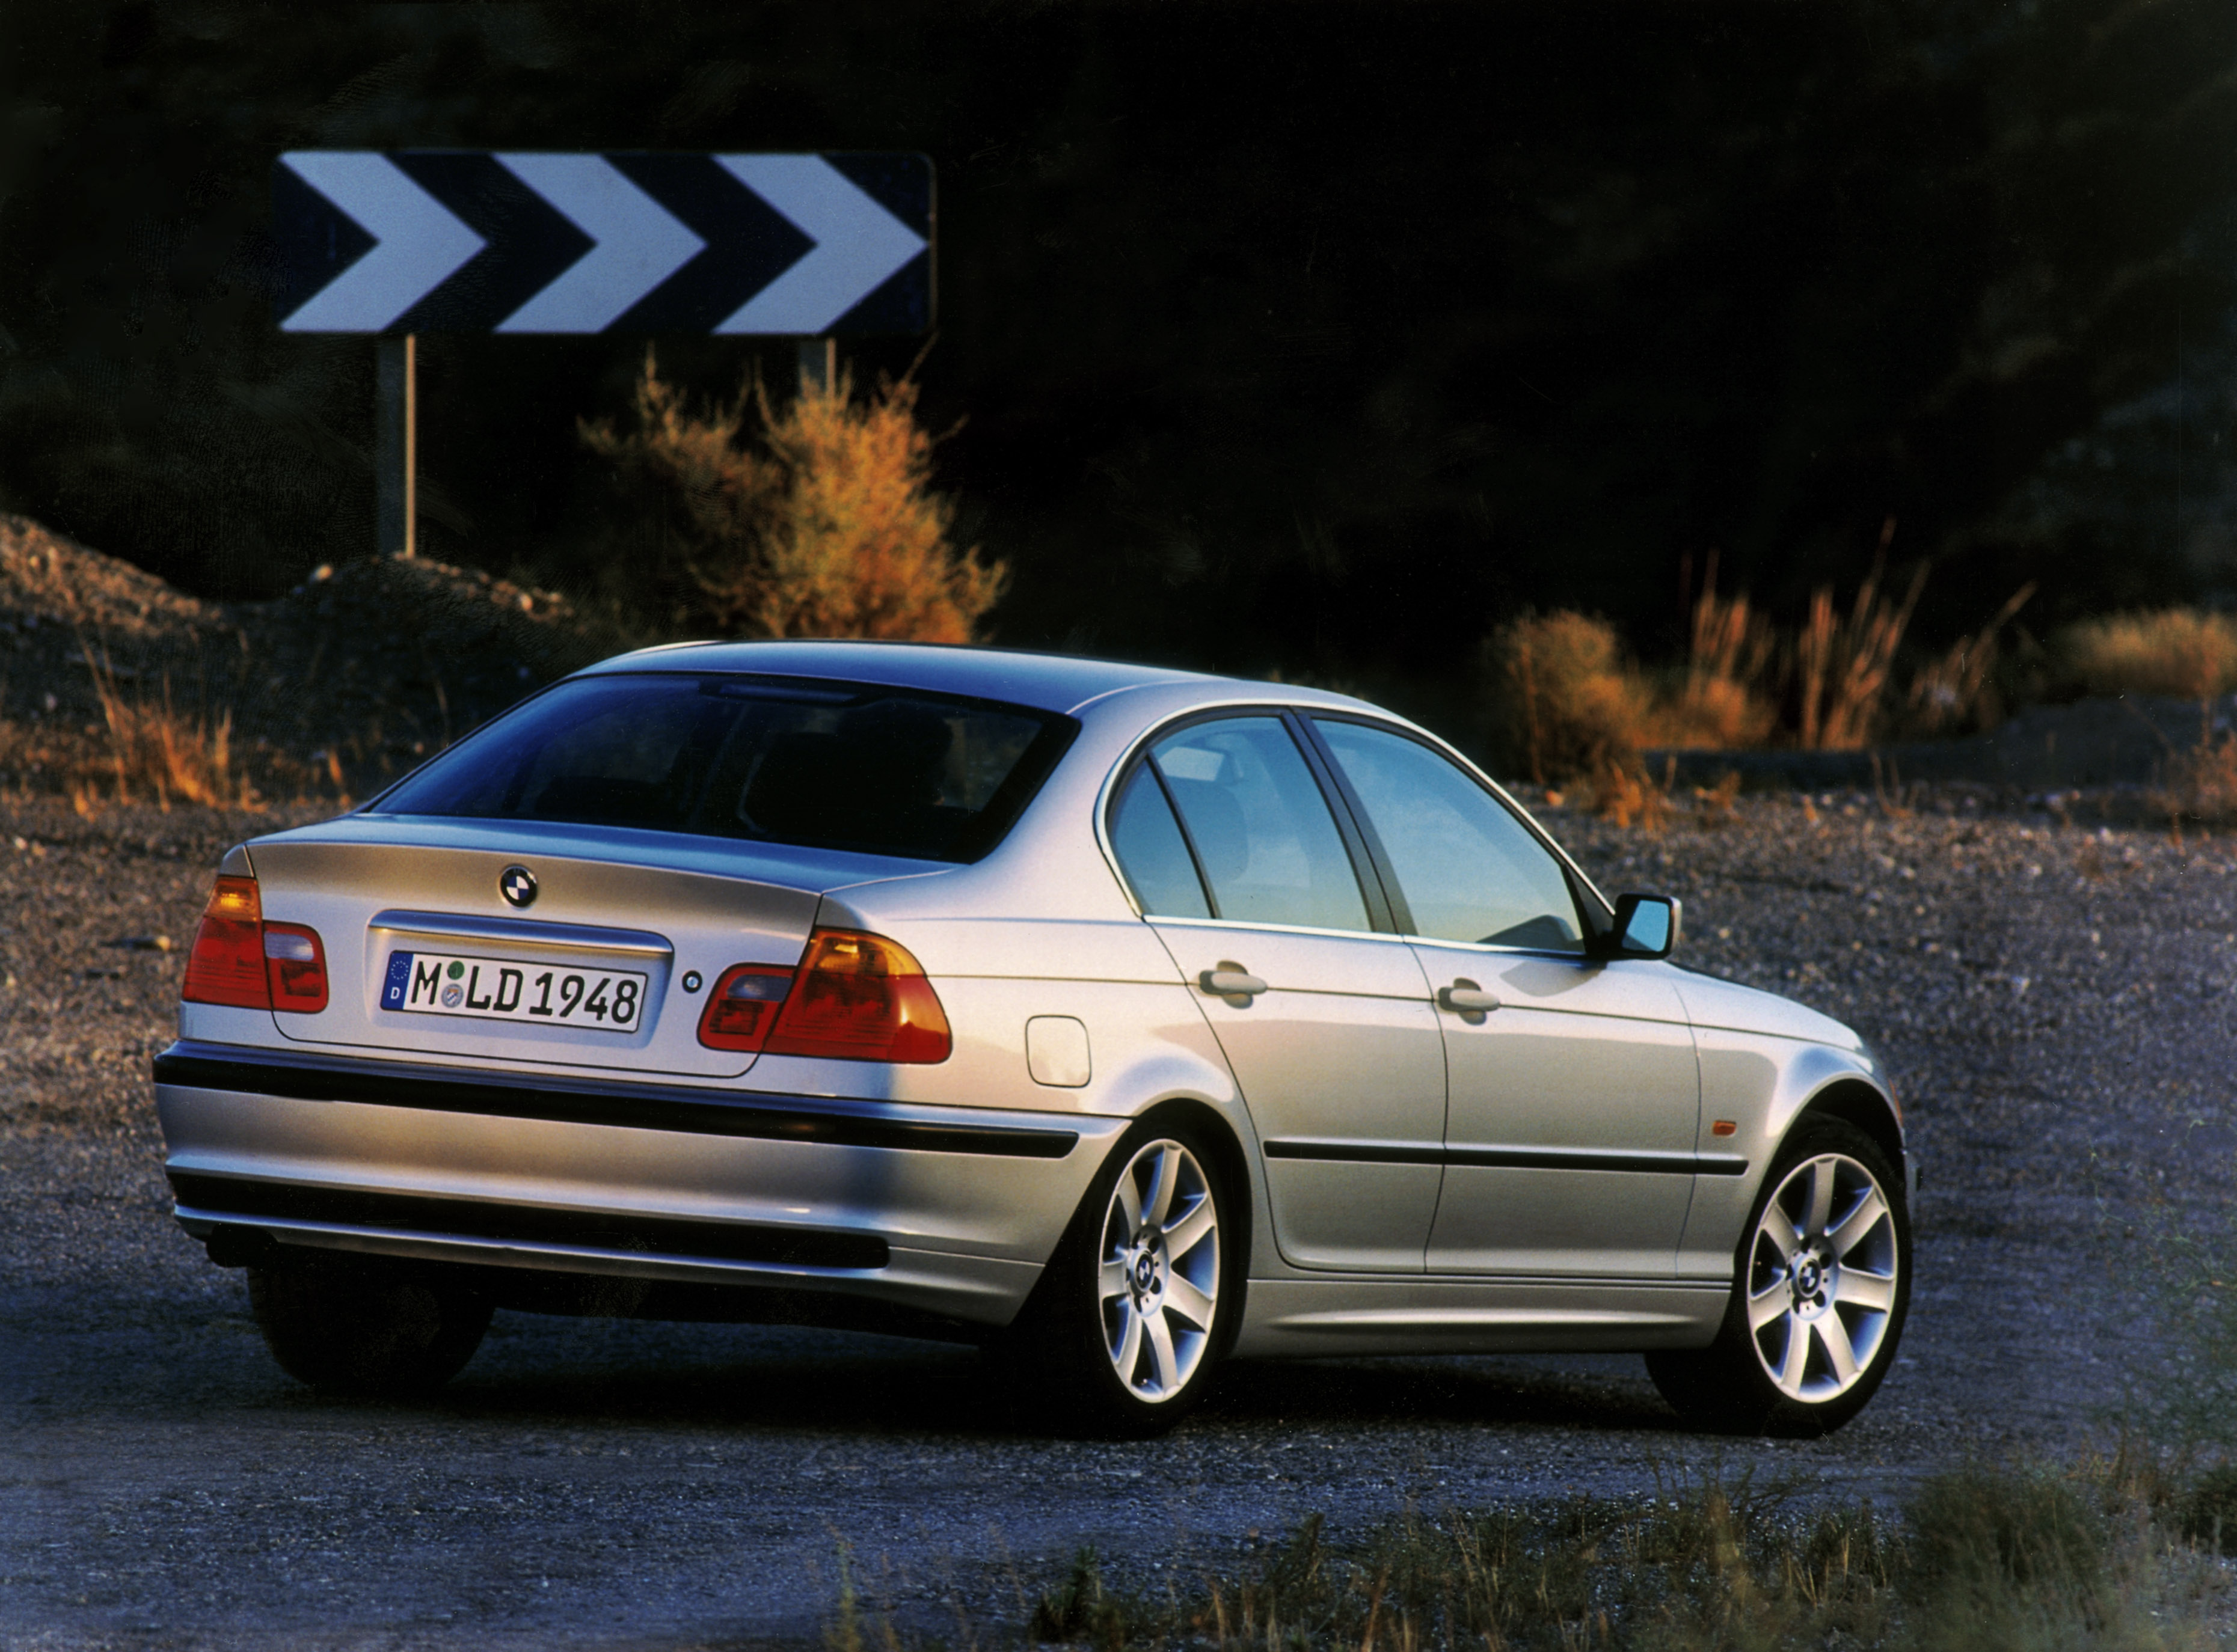 Wielki hit polskich ogłoszeń, czyli używane BMW serii 3